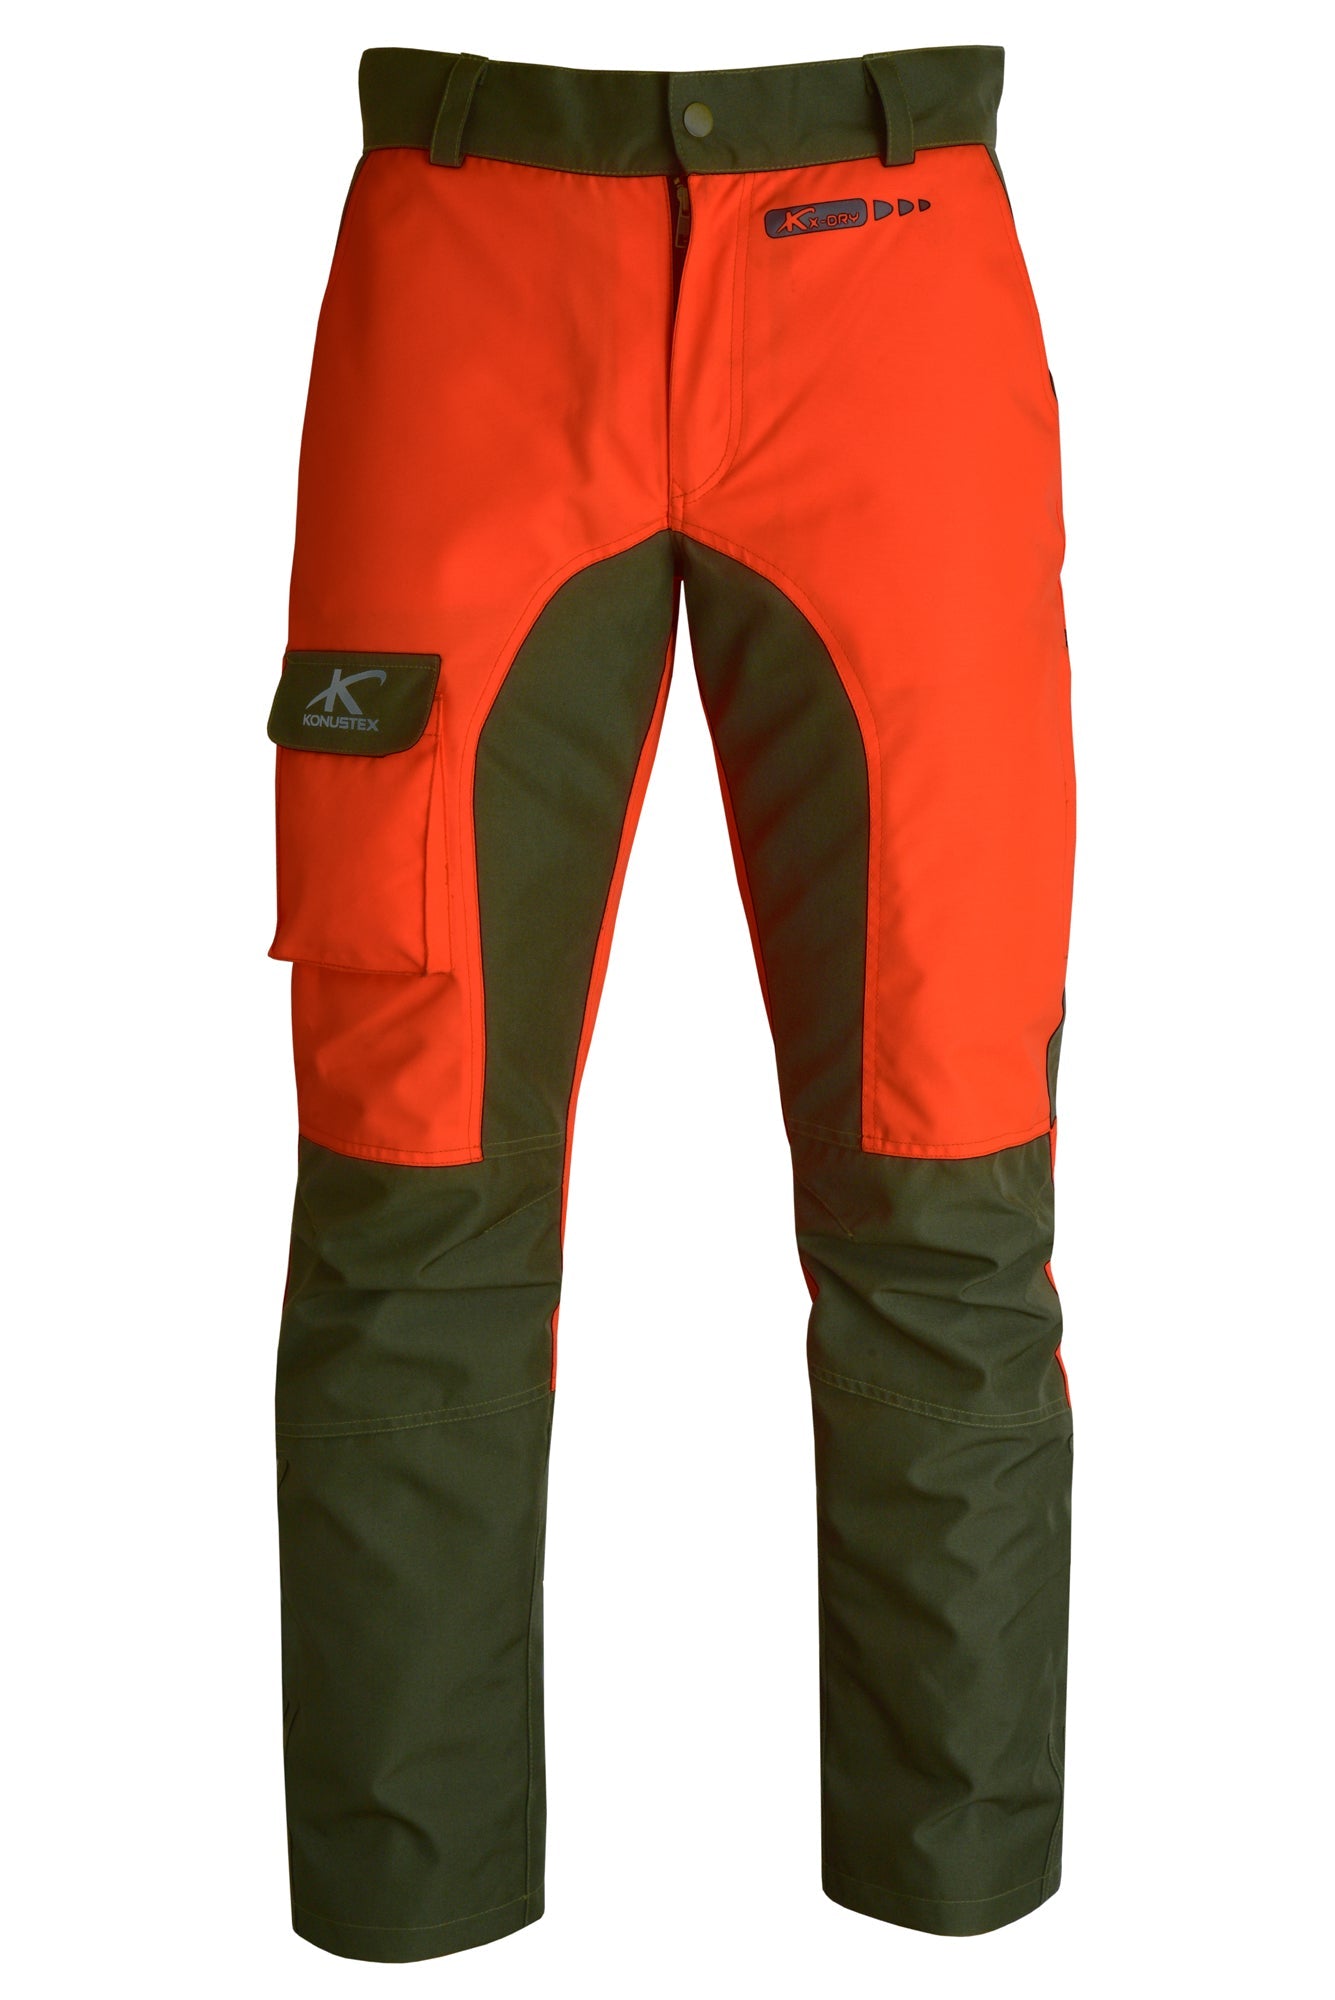 Pantalone da caccia KONUSTEX MAXGAME 2.0 impermeabile con imbottitura rimovibile verde arancione OnTheRoad.shop KONUSTEX